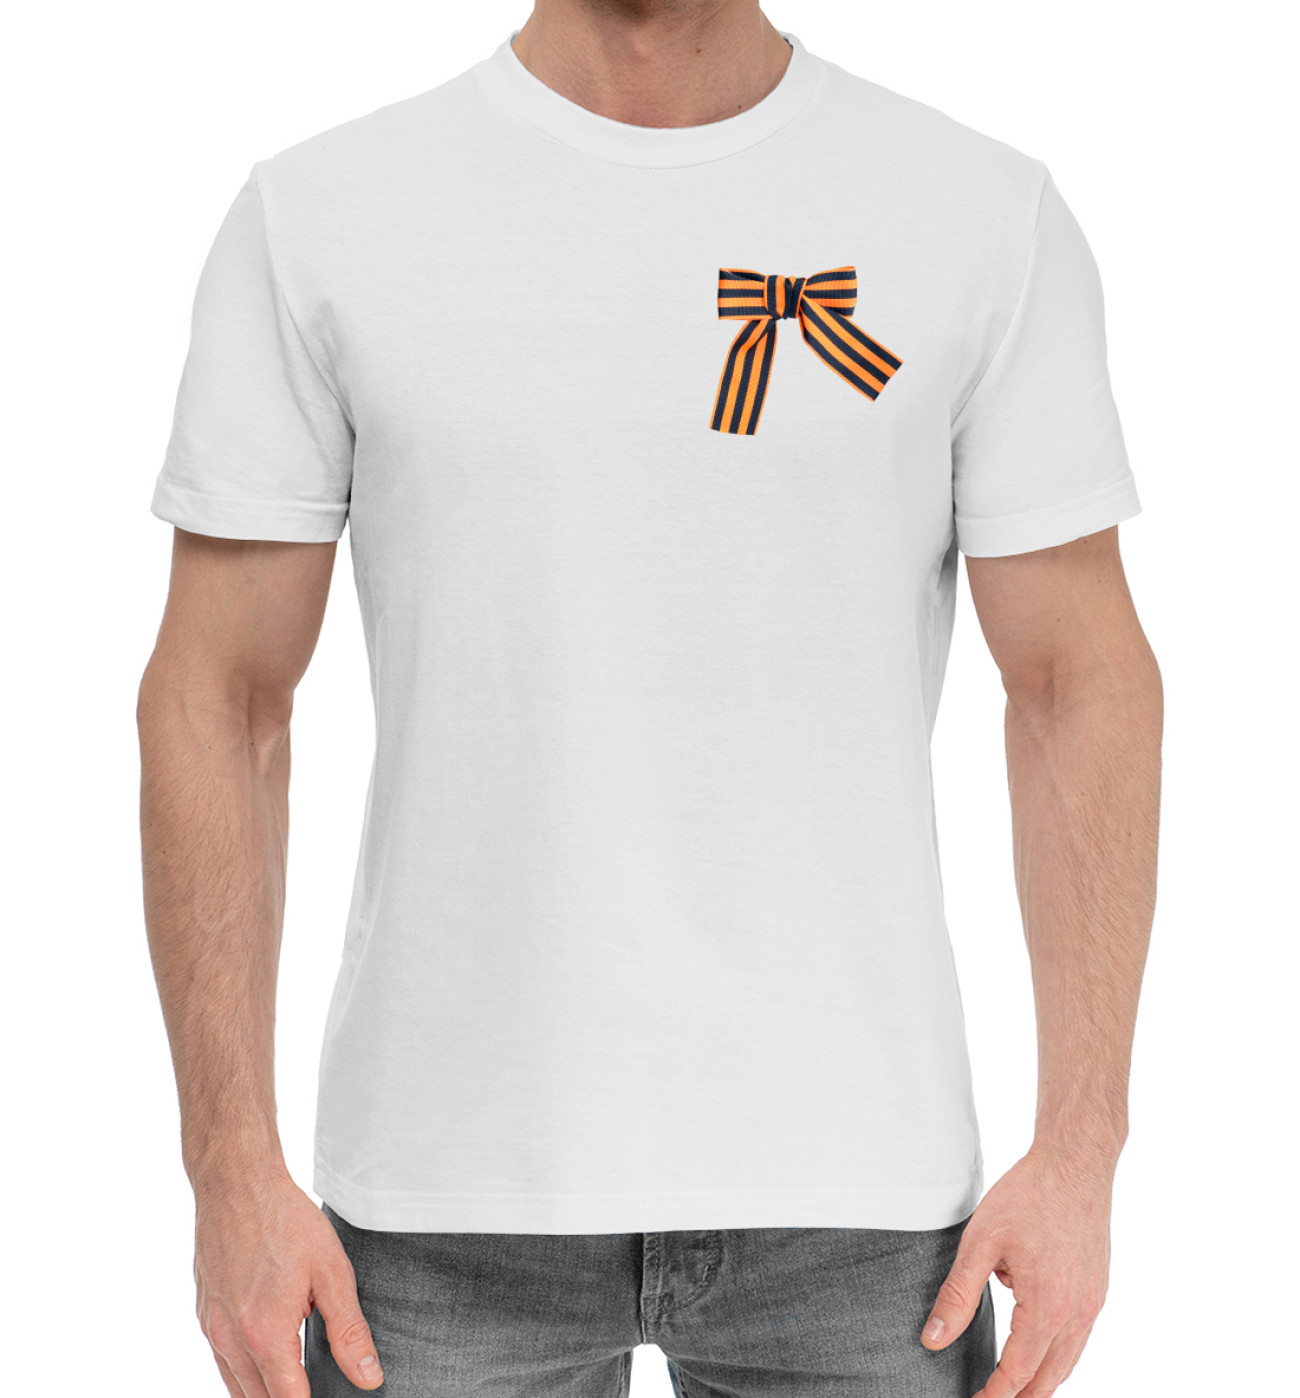 Мужская Хлопковая футболка Георгиевская лента, артикул: 9MA-996491-hfu-2